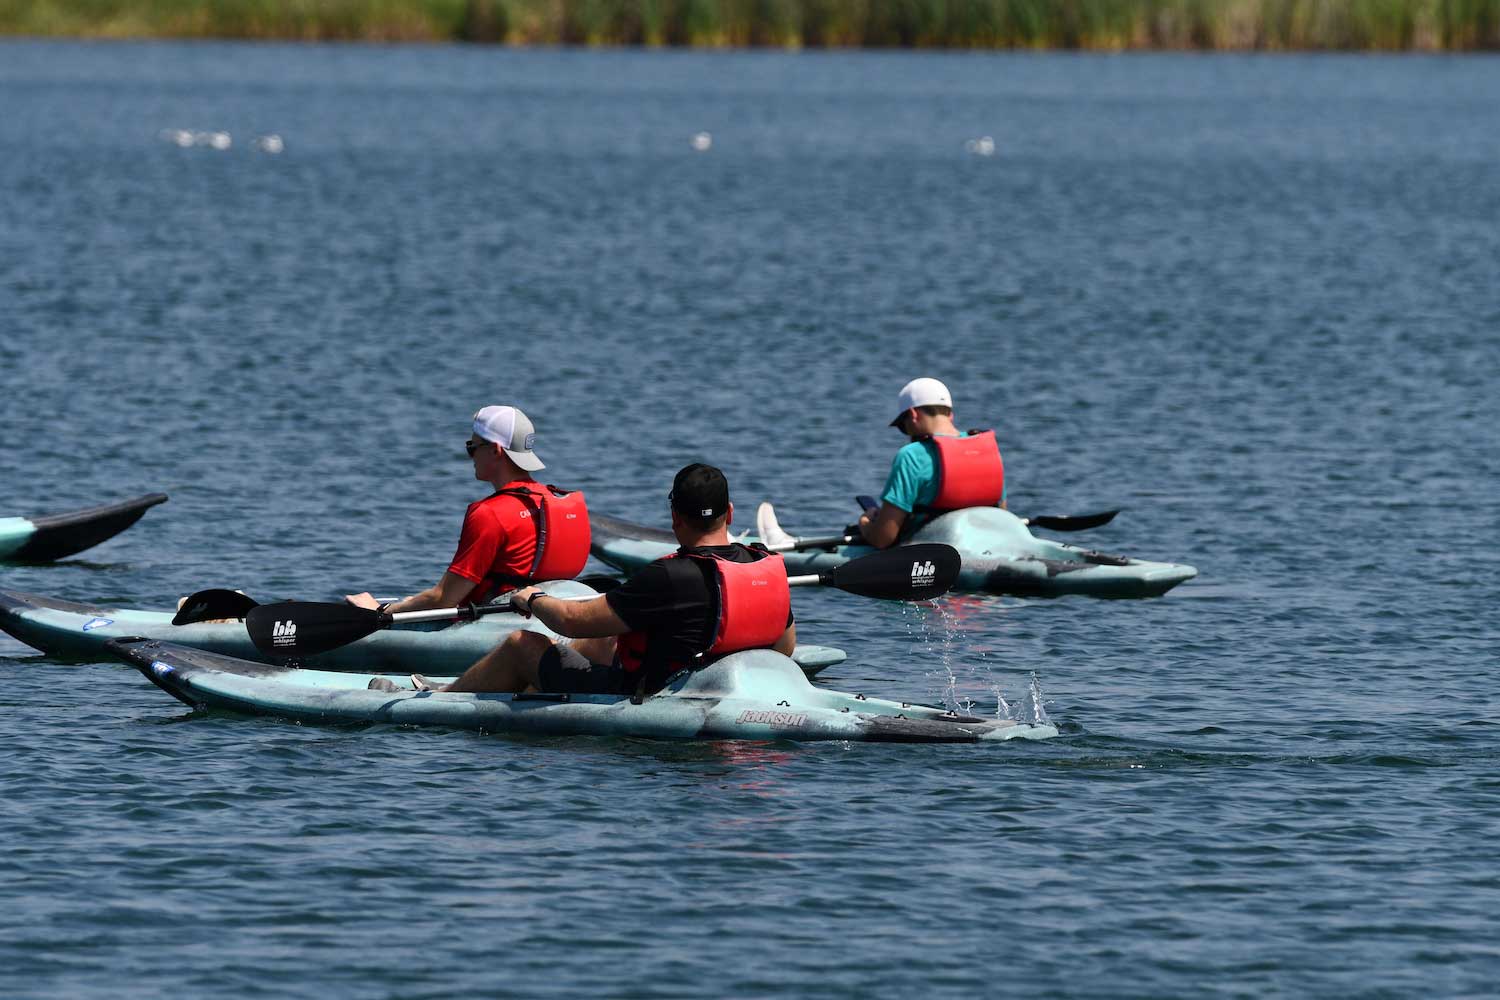 Three kayakers paddling on a lake.